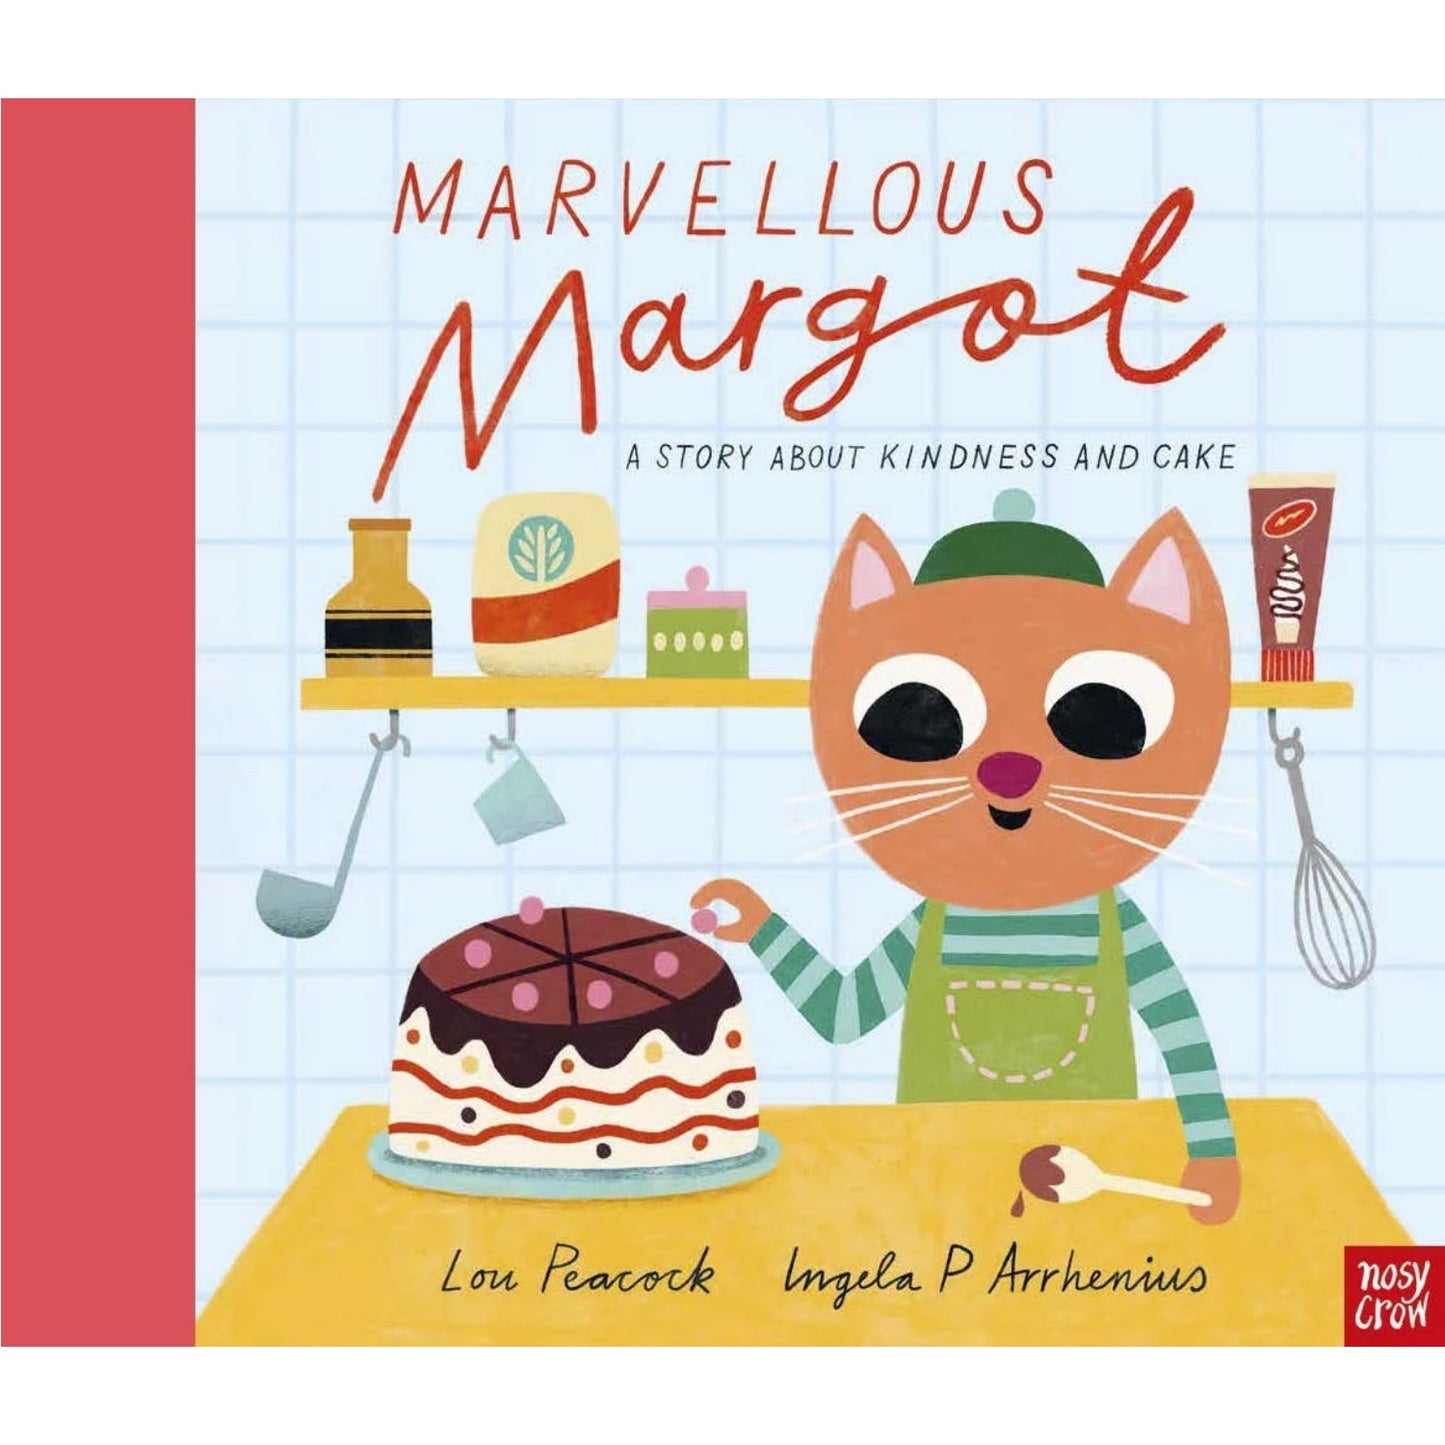 Marvellous Margot | Hardcover | Children’s Book on Friendship